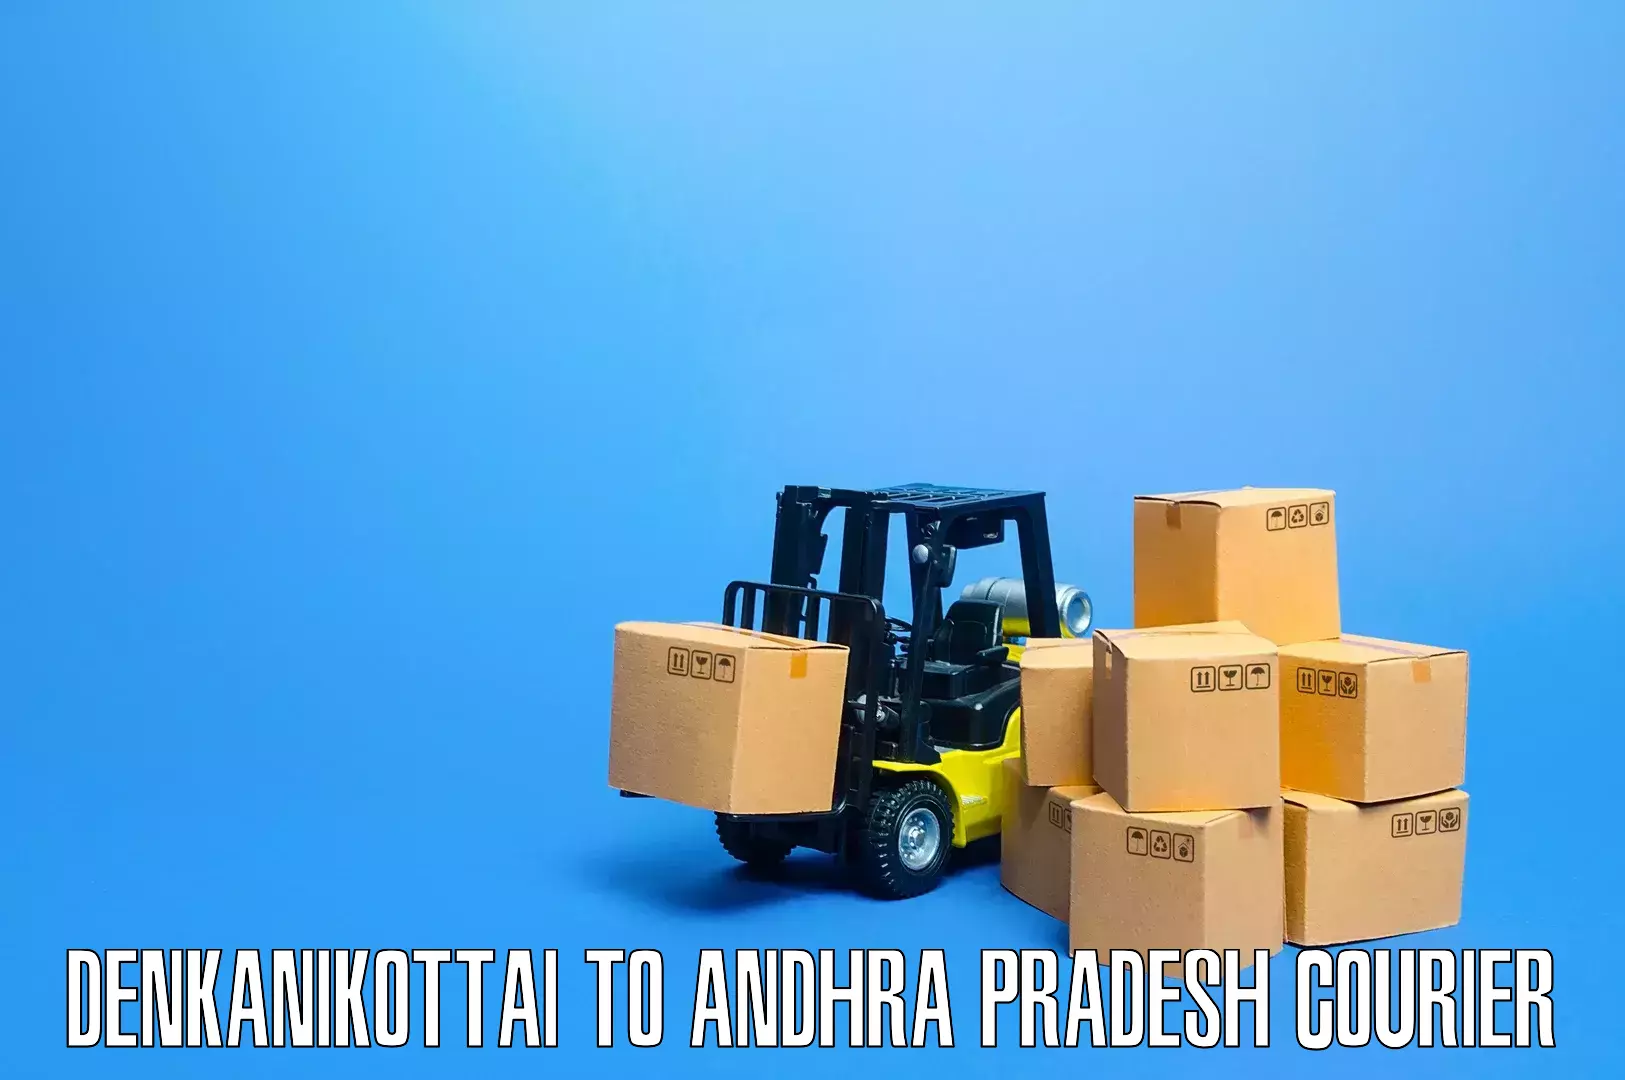 Furniture transport solutions Denkanikottai to Achampet Palnadu